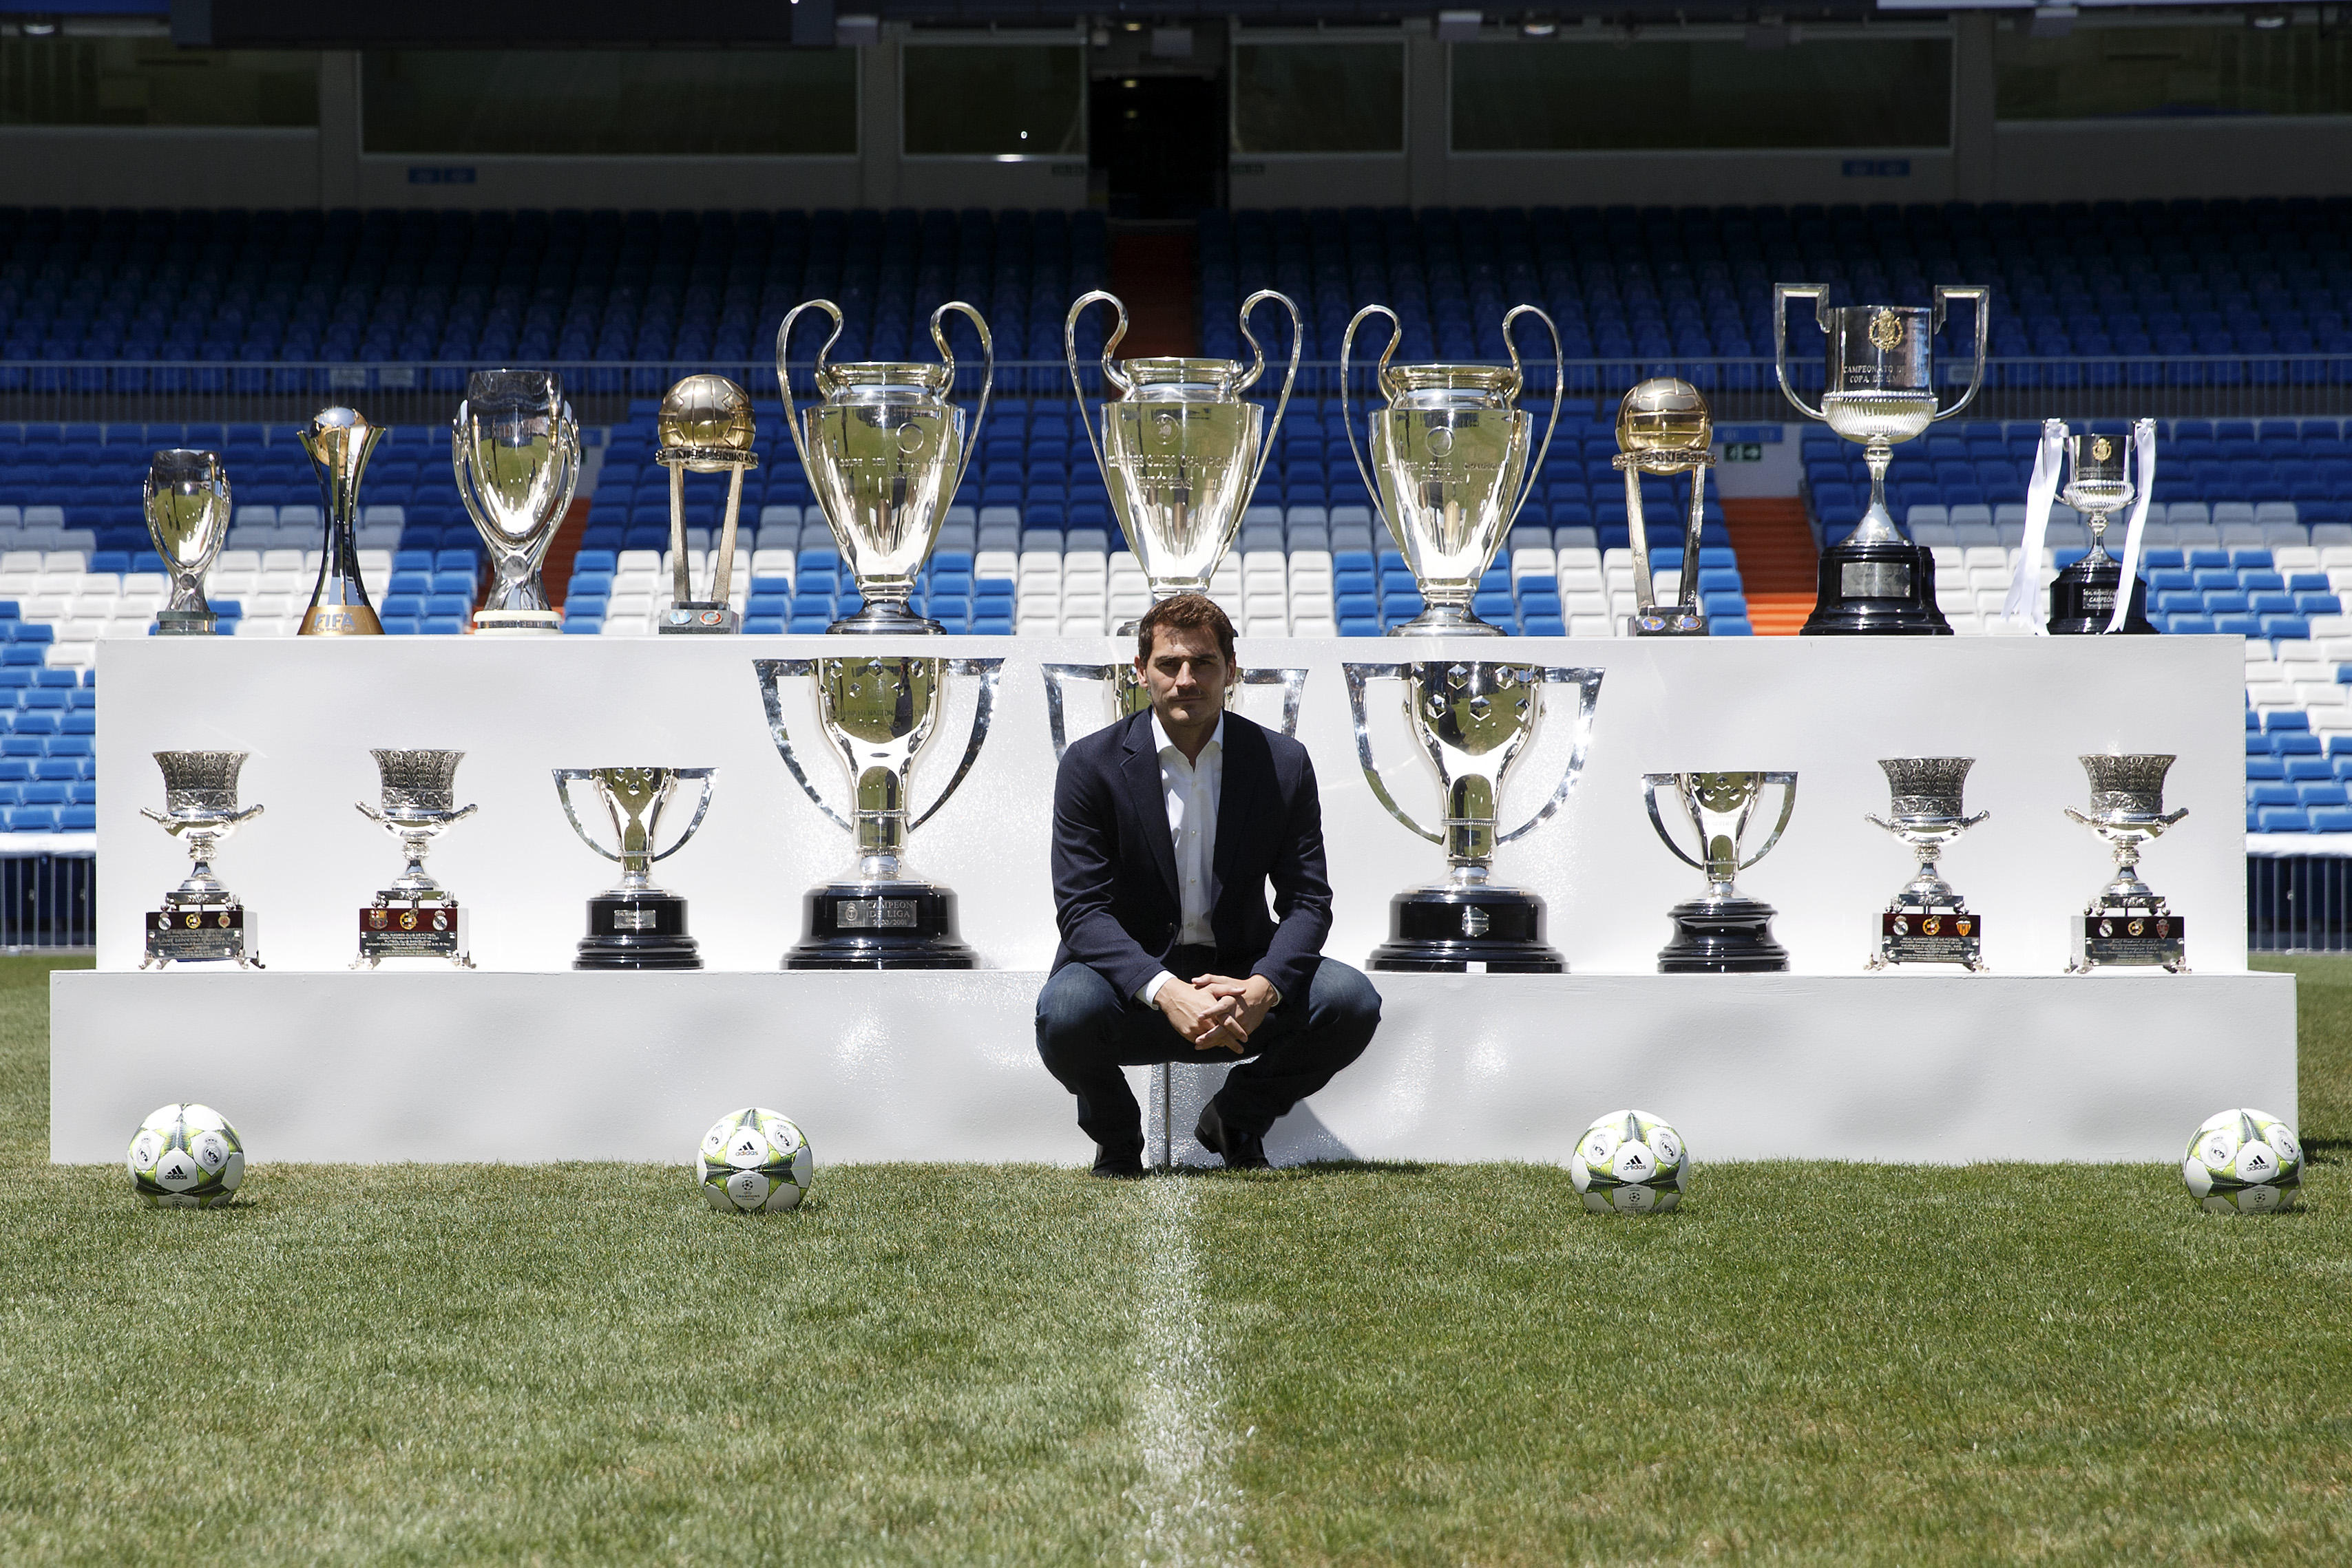 Handy-Wallpaper Sport, Fußball, Real Madrid Cf, Iker Casillas kostenlos herunterladen.